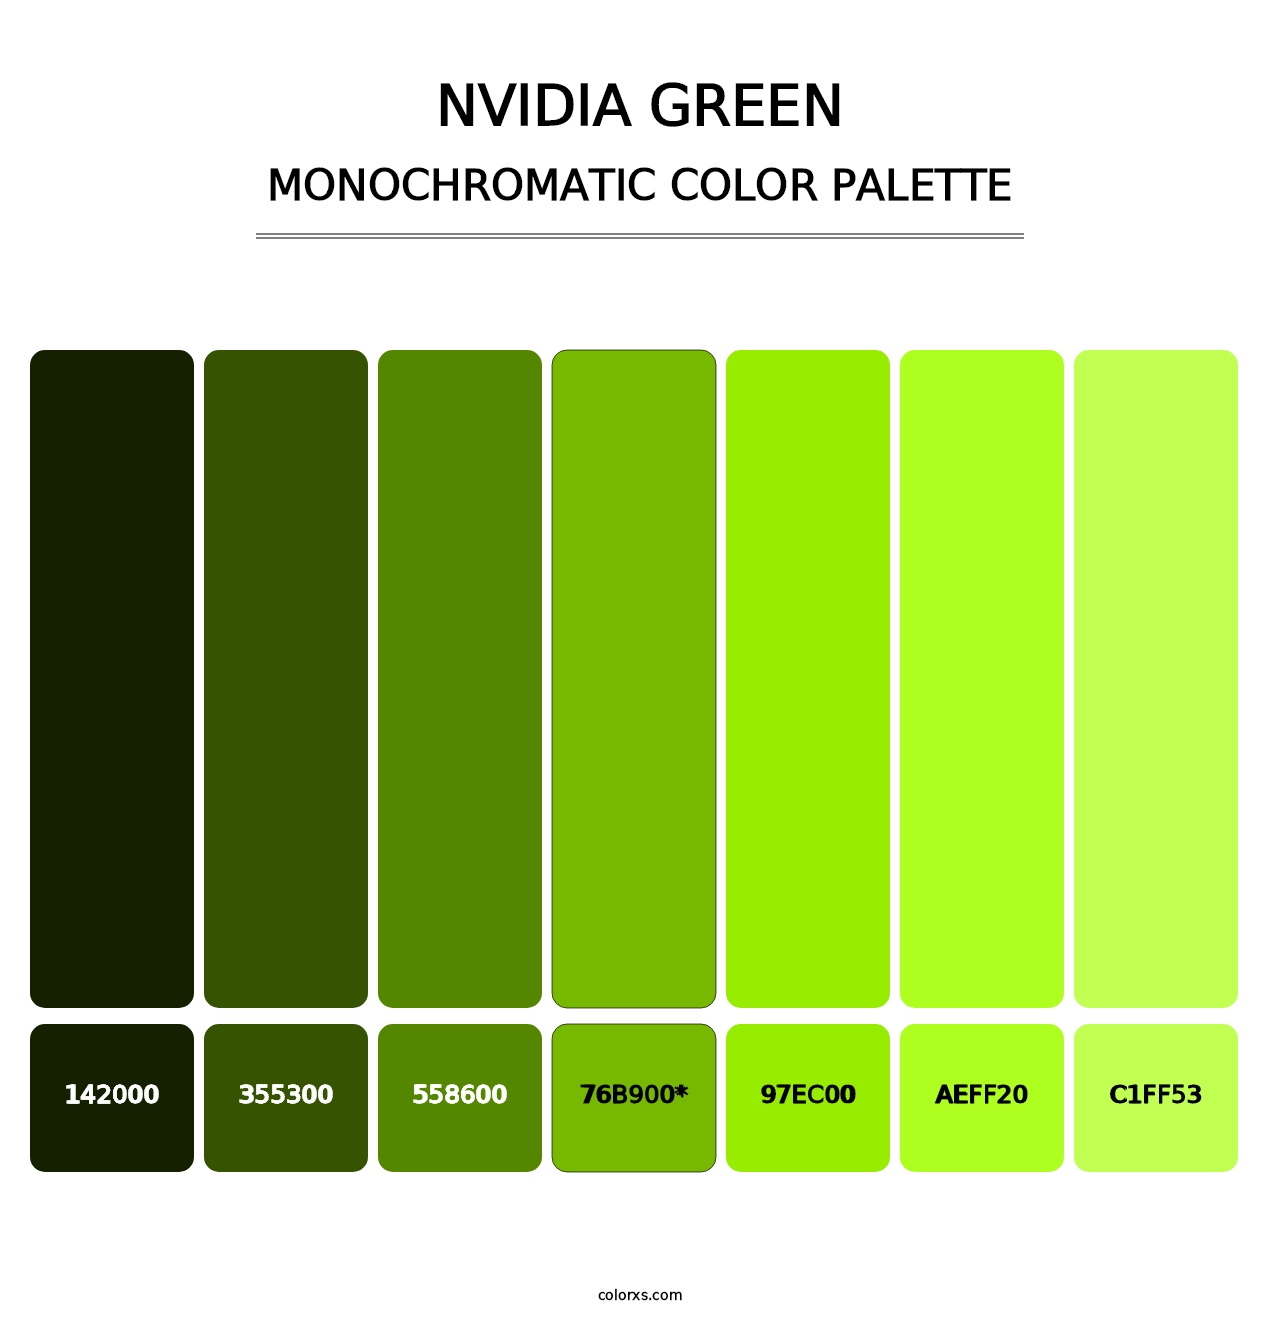 Nvidia Green - Monochromatic Color Palette